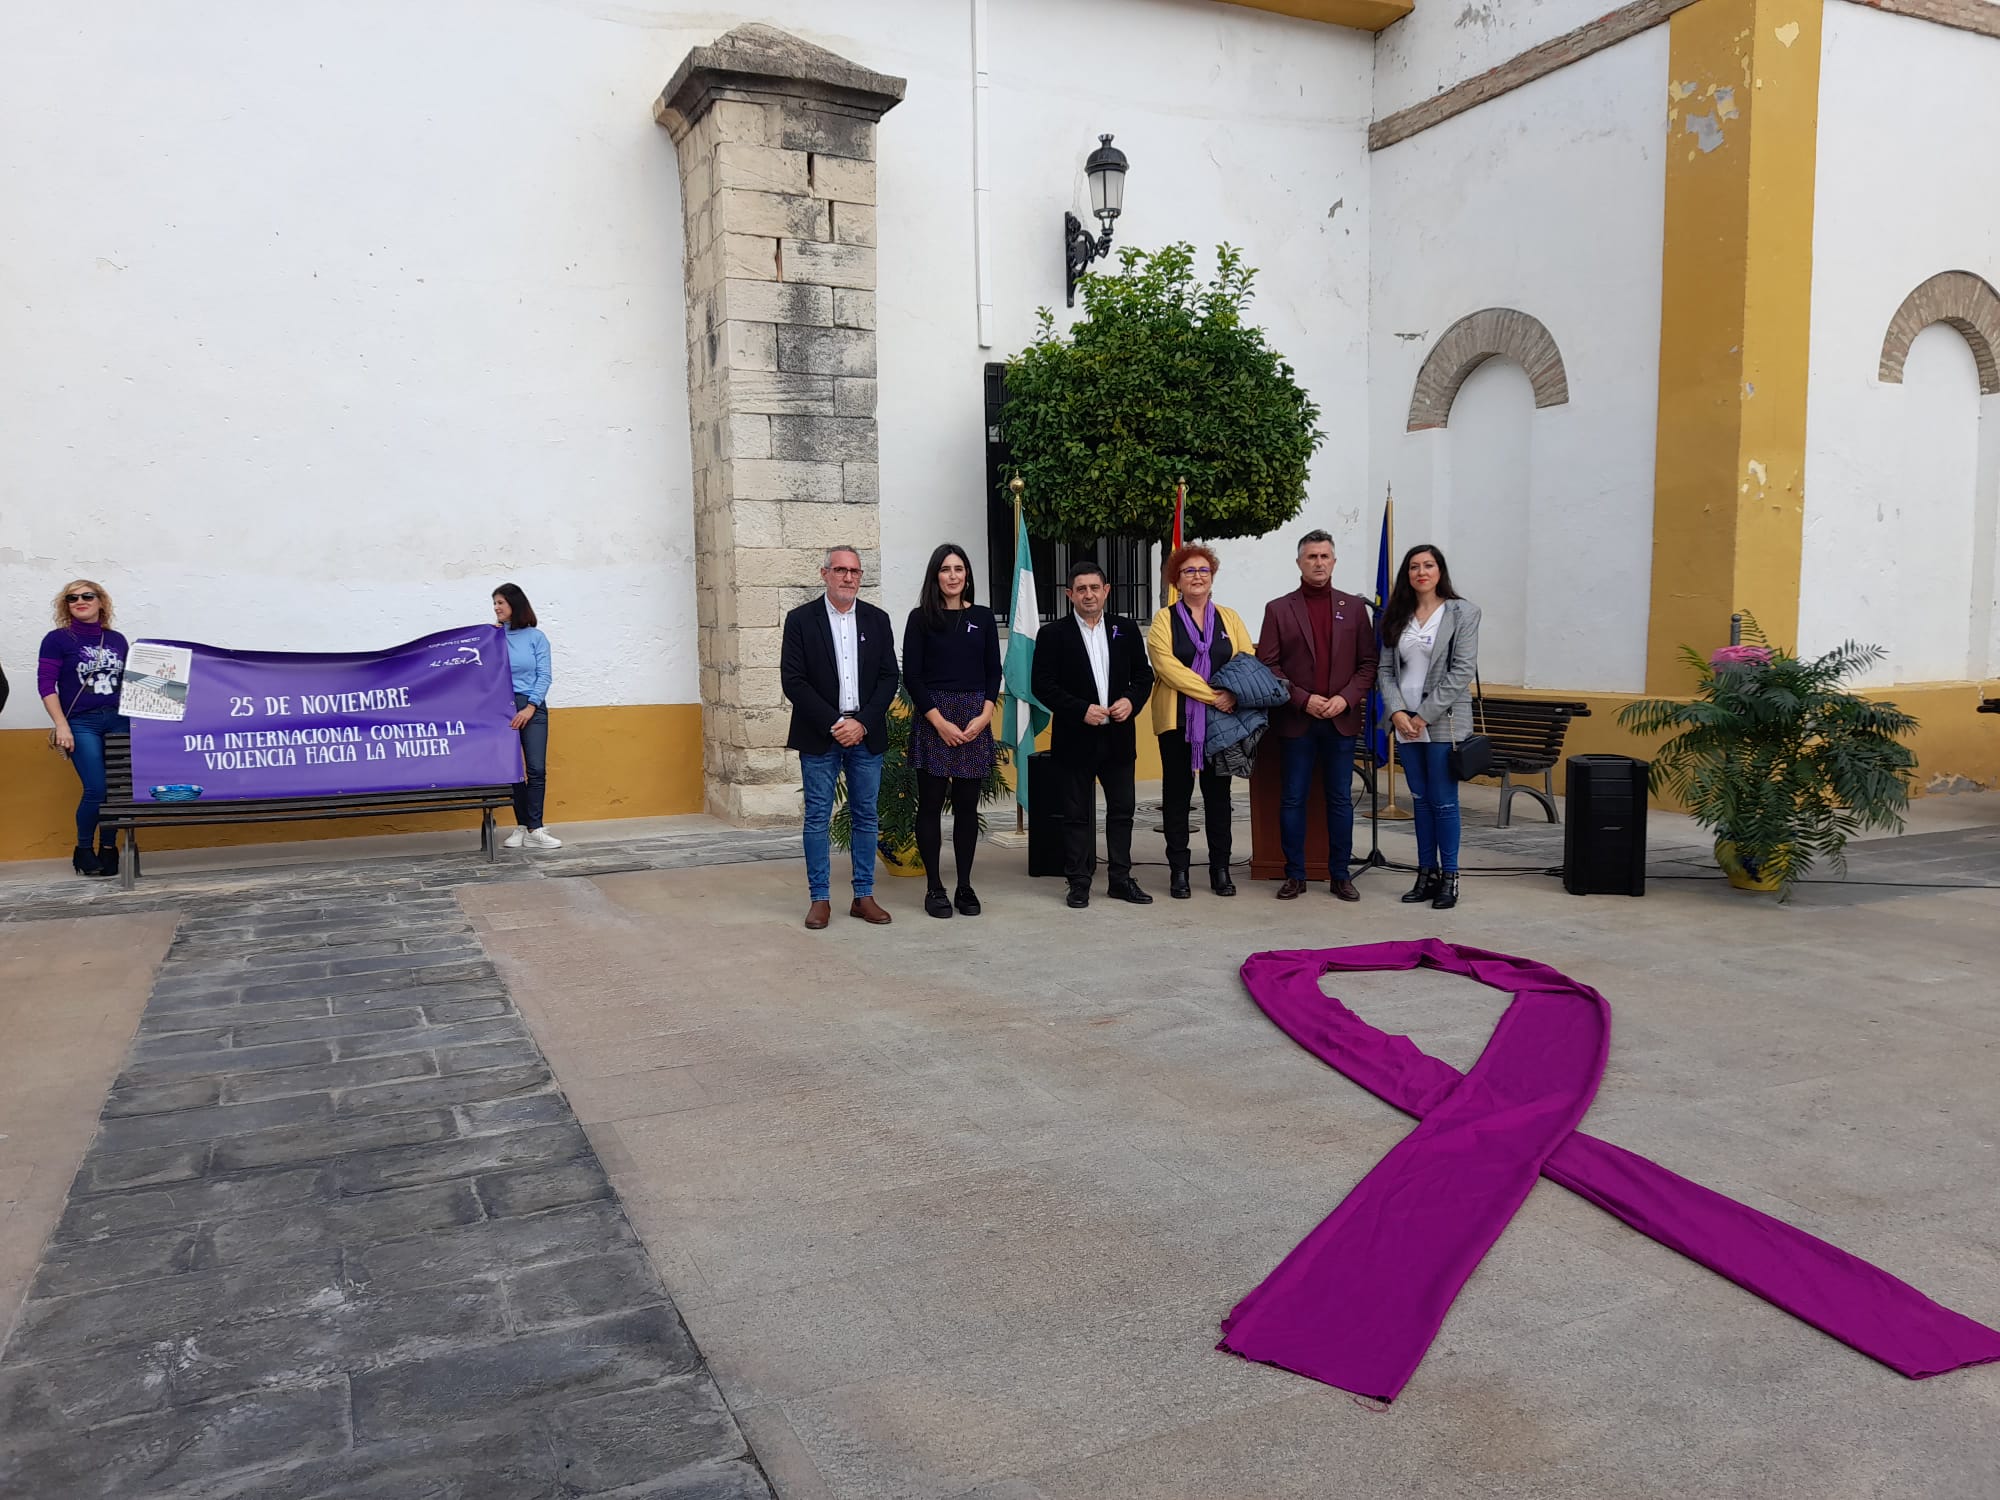 El presidente de Diputación participa en Escañuela en los actos conmemorativos por el 25N